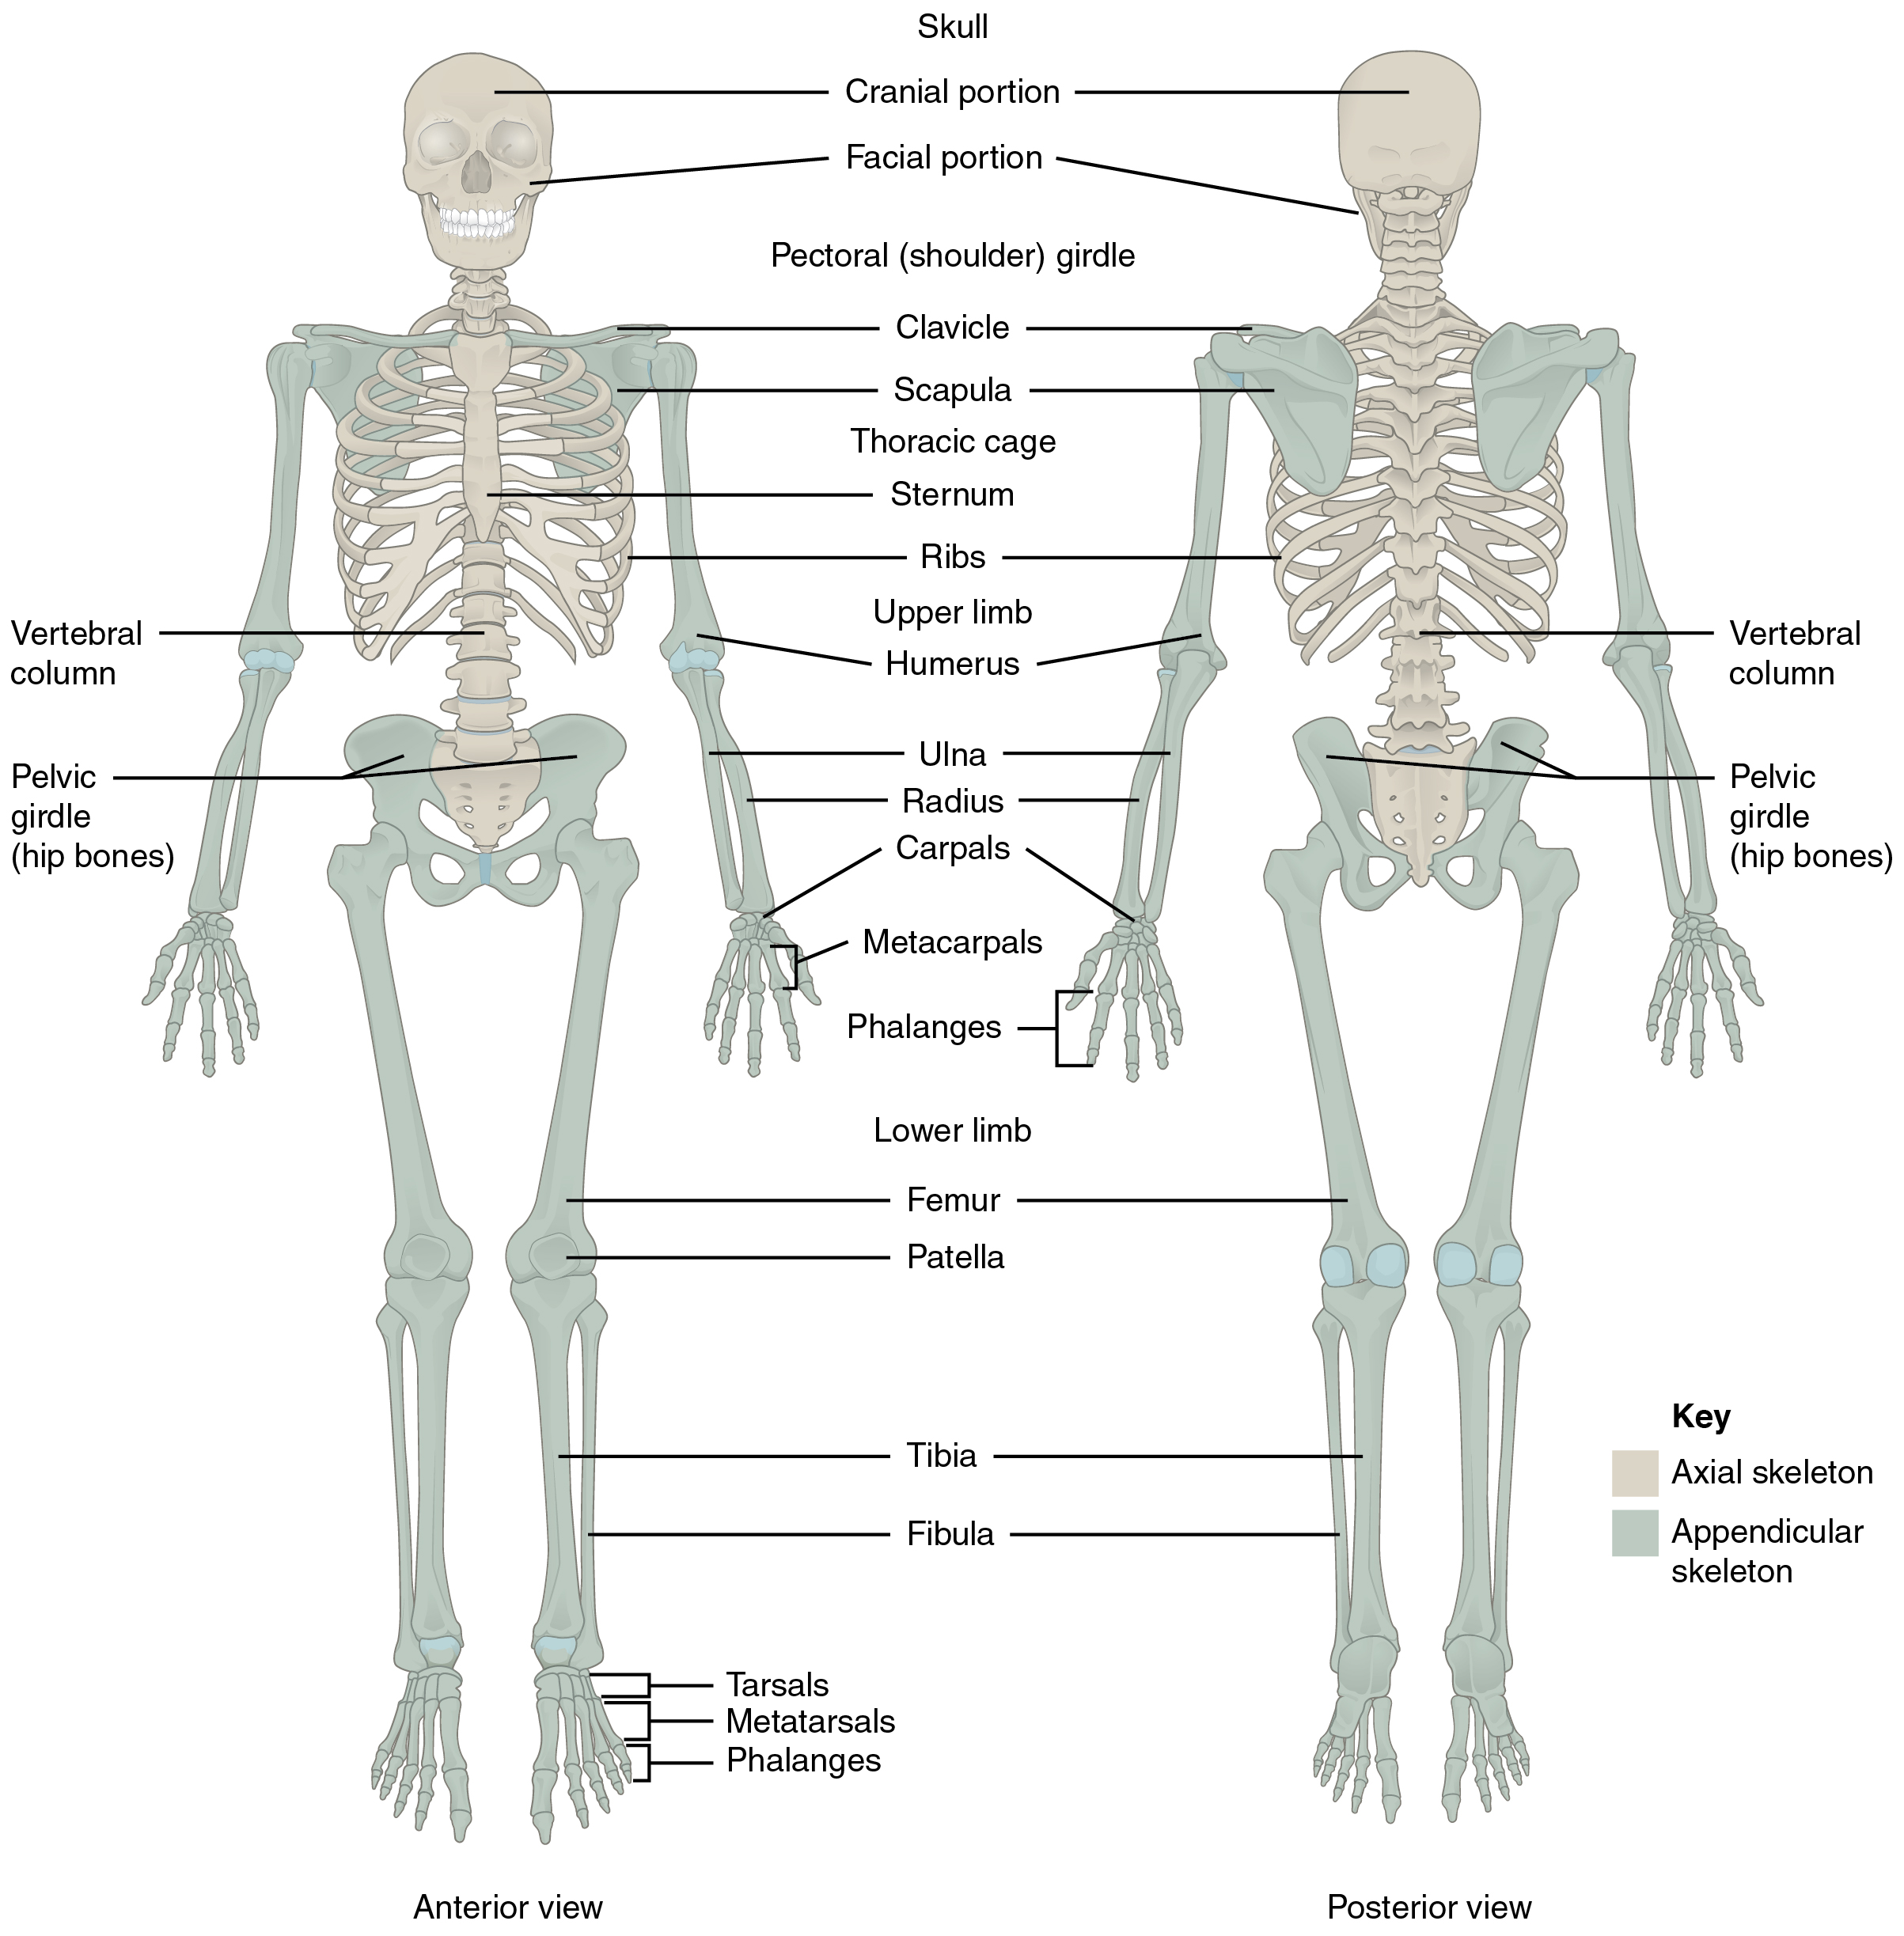 Este diagrama mostra o esqueleto humano e identifica os ossos principais. O painel esquerdo mostra a vista anterior (de frente) e o painel direito mostra a vista posterior (de trás).